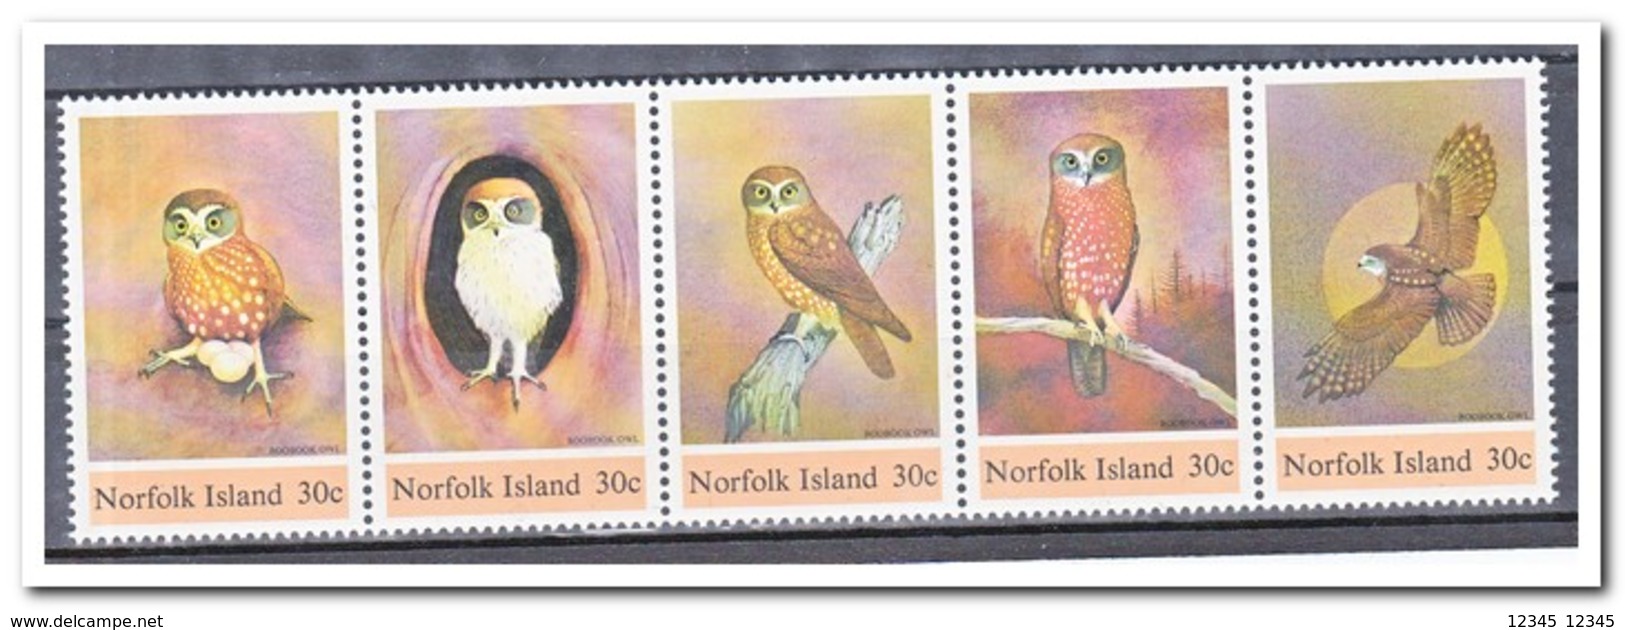 Norfolk Island 1984, Postfris MNH, Birds, Owls - Norfolk Eiland